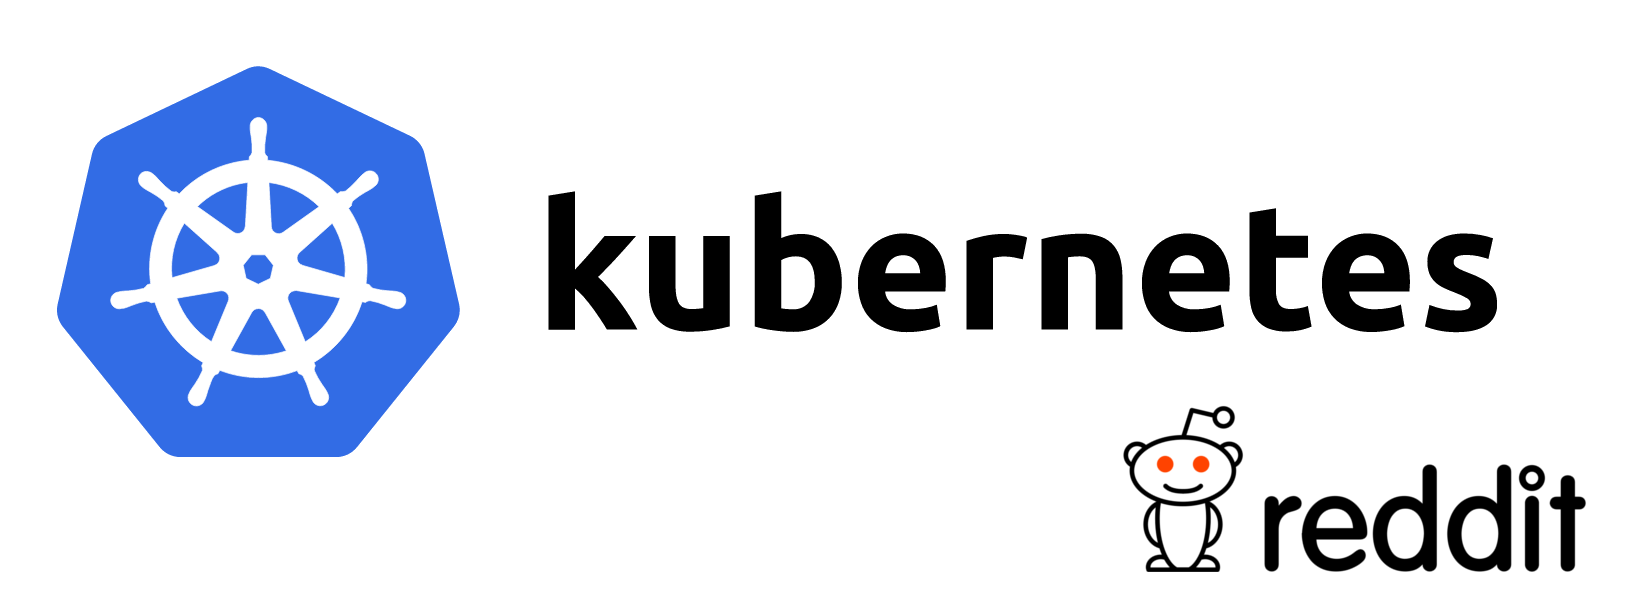 Разработчики Kubernetes отвечают на вопросы пользователей Reddit - 1